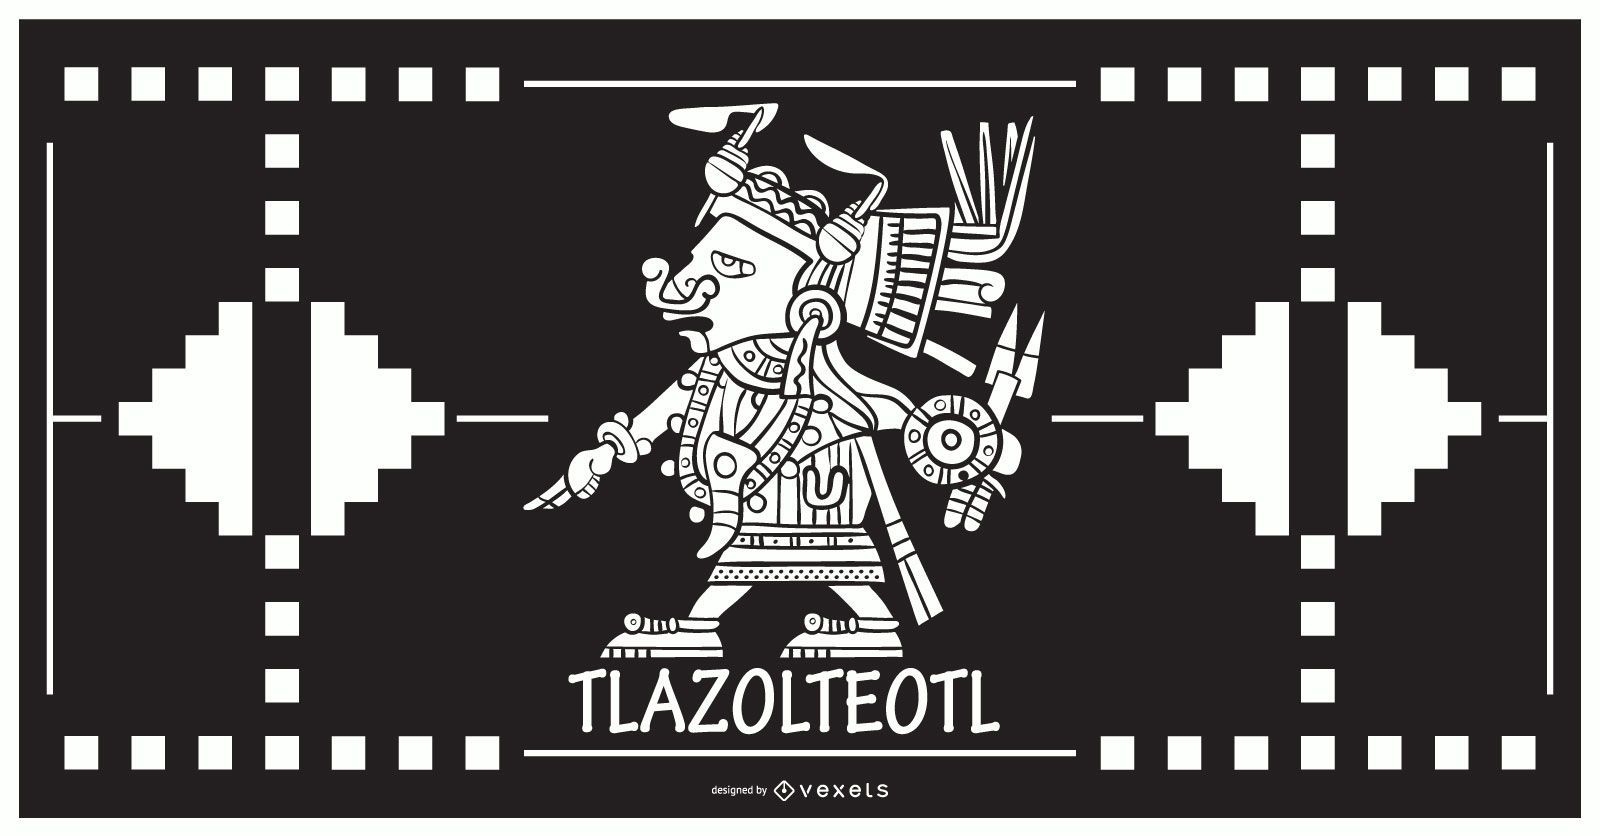 Diseño de dios azteca tlazolteol